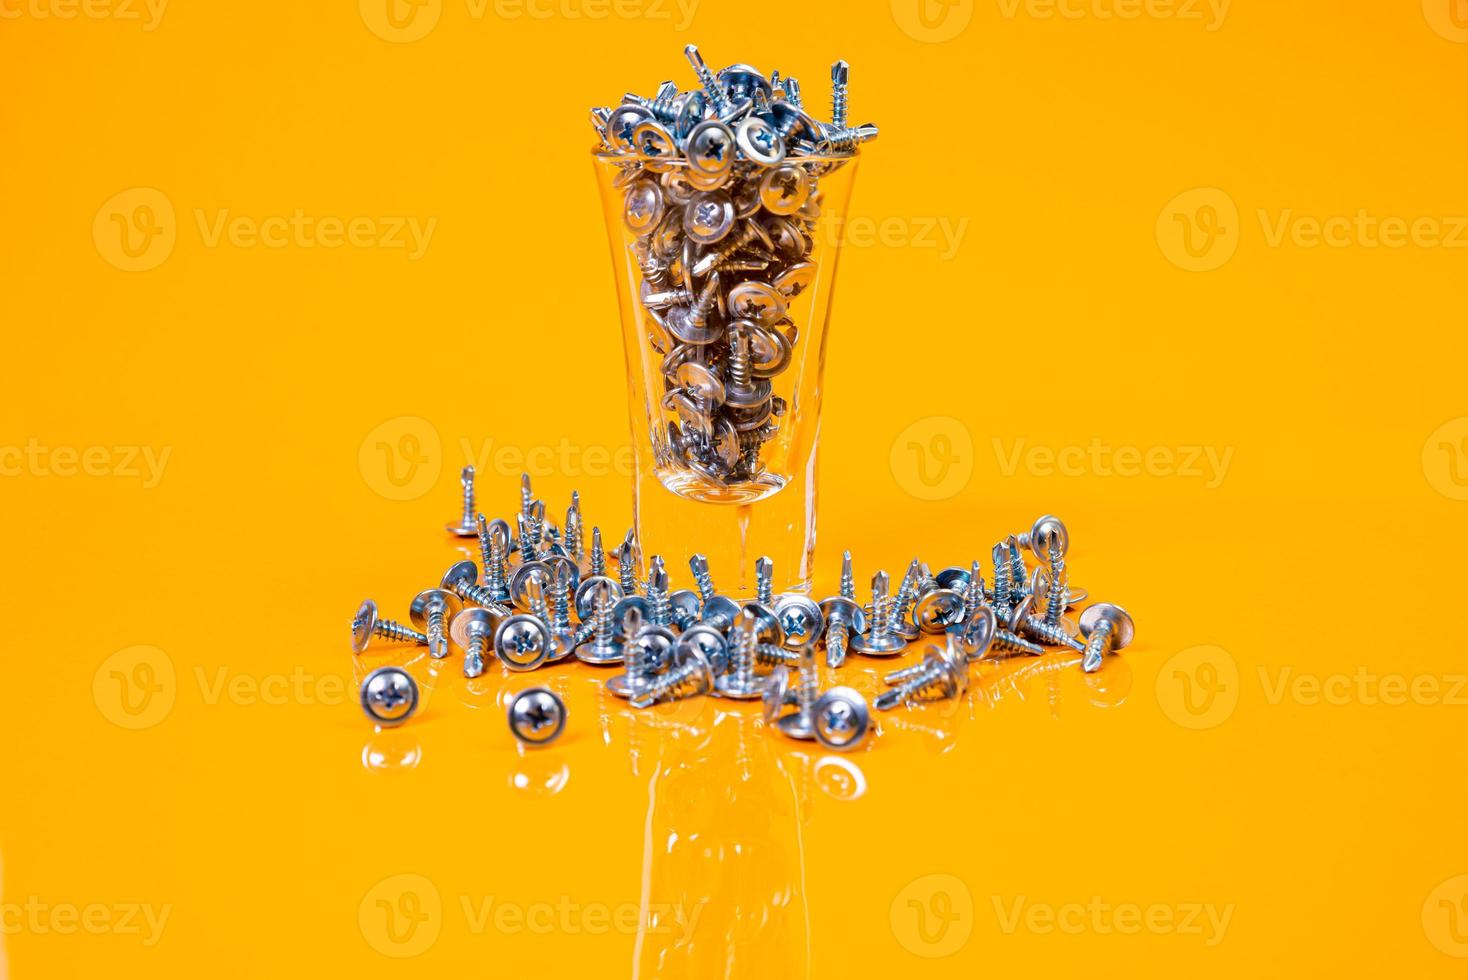 muitos parafusos auto-roscantes de metal feitos de aço em um vidro, em um balde. parafuso auto-roscante para metal, para ferro, parafuso auto-roscante cromado, sobre fundo amarelo laranja, foto